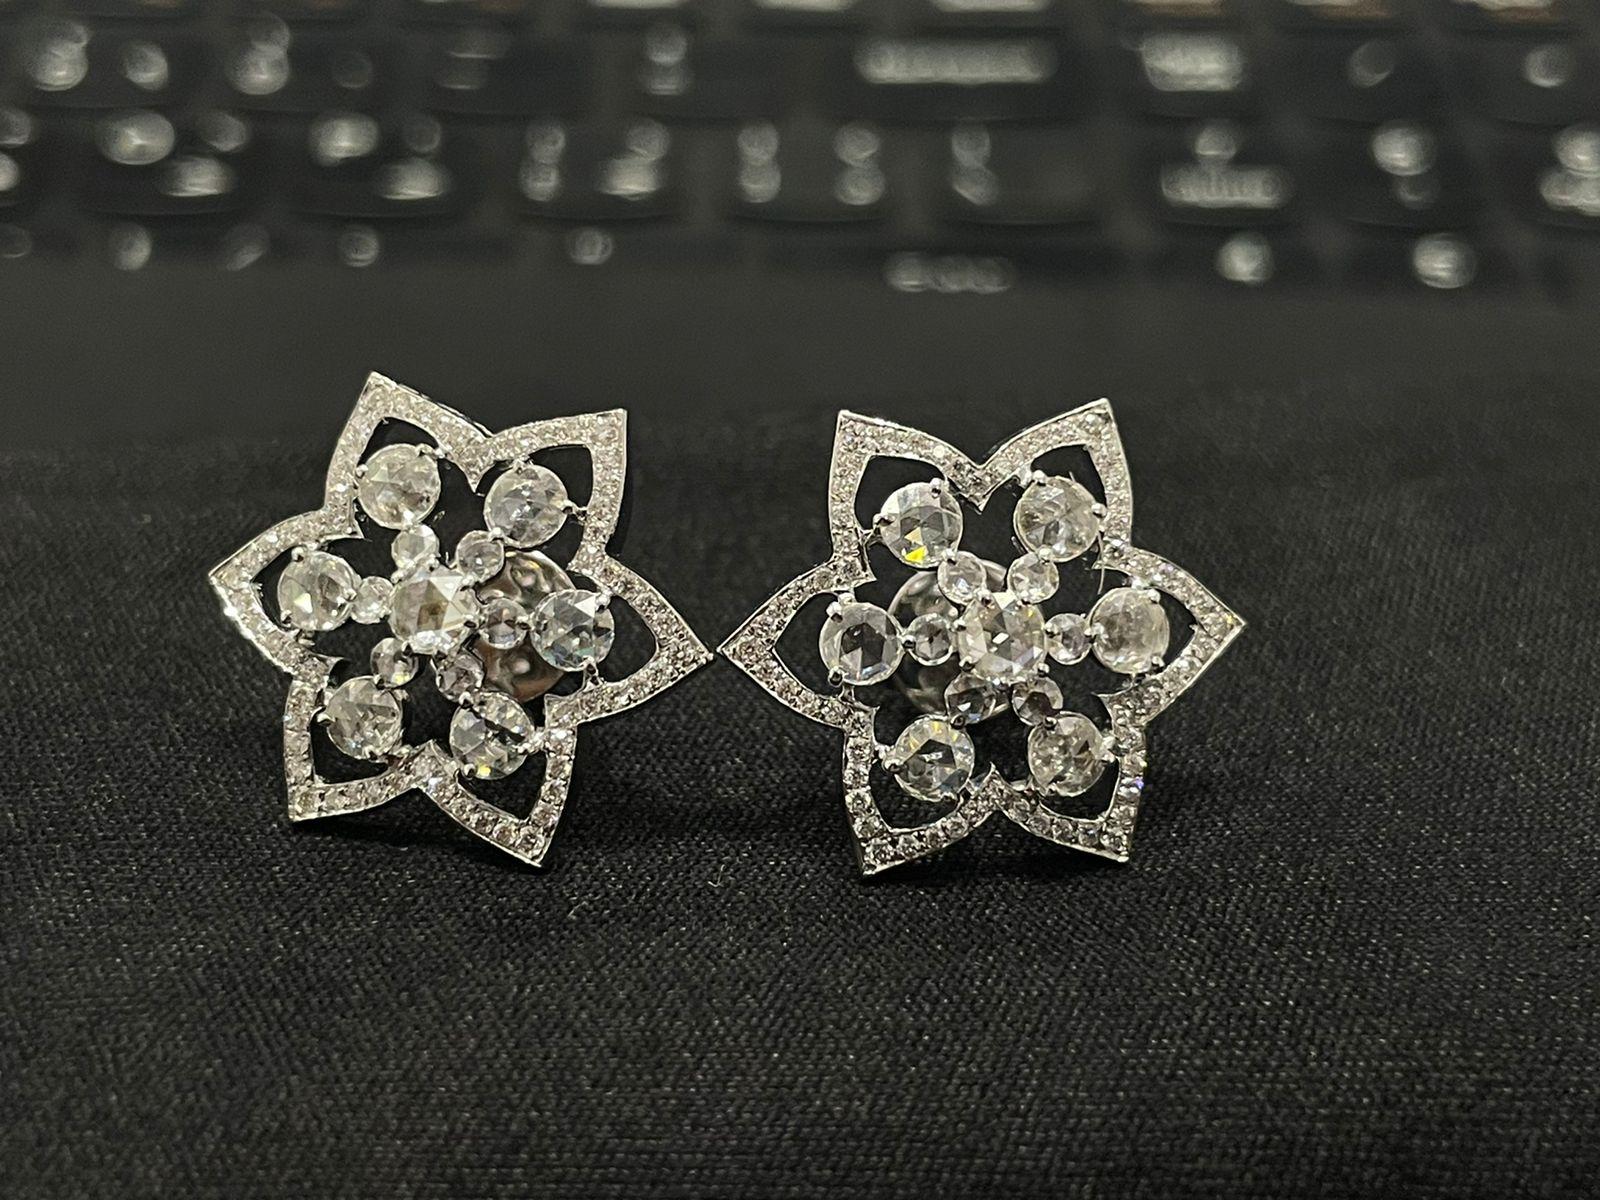 Boucles d'oreilles en or blanc 18 carats avec diamant Panim Rosecut



Ces superbes boucles d'oreilles en diamant taillé sont uniques et faites à la main.

Réalisée en or blanc 18 carats, cette paire de boucles d'oreilles présente un diamant de 1,65